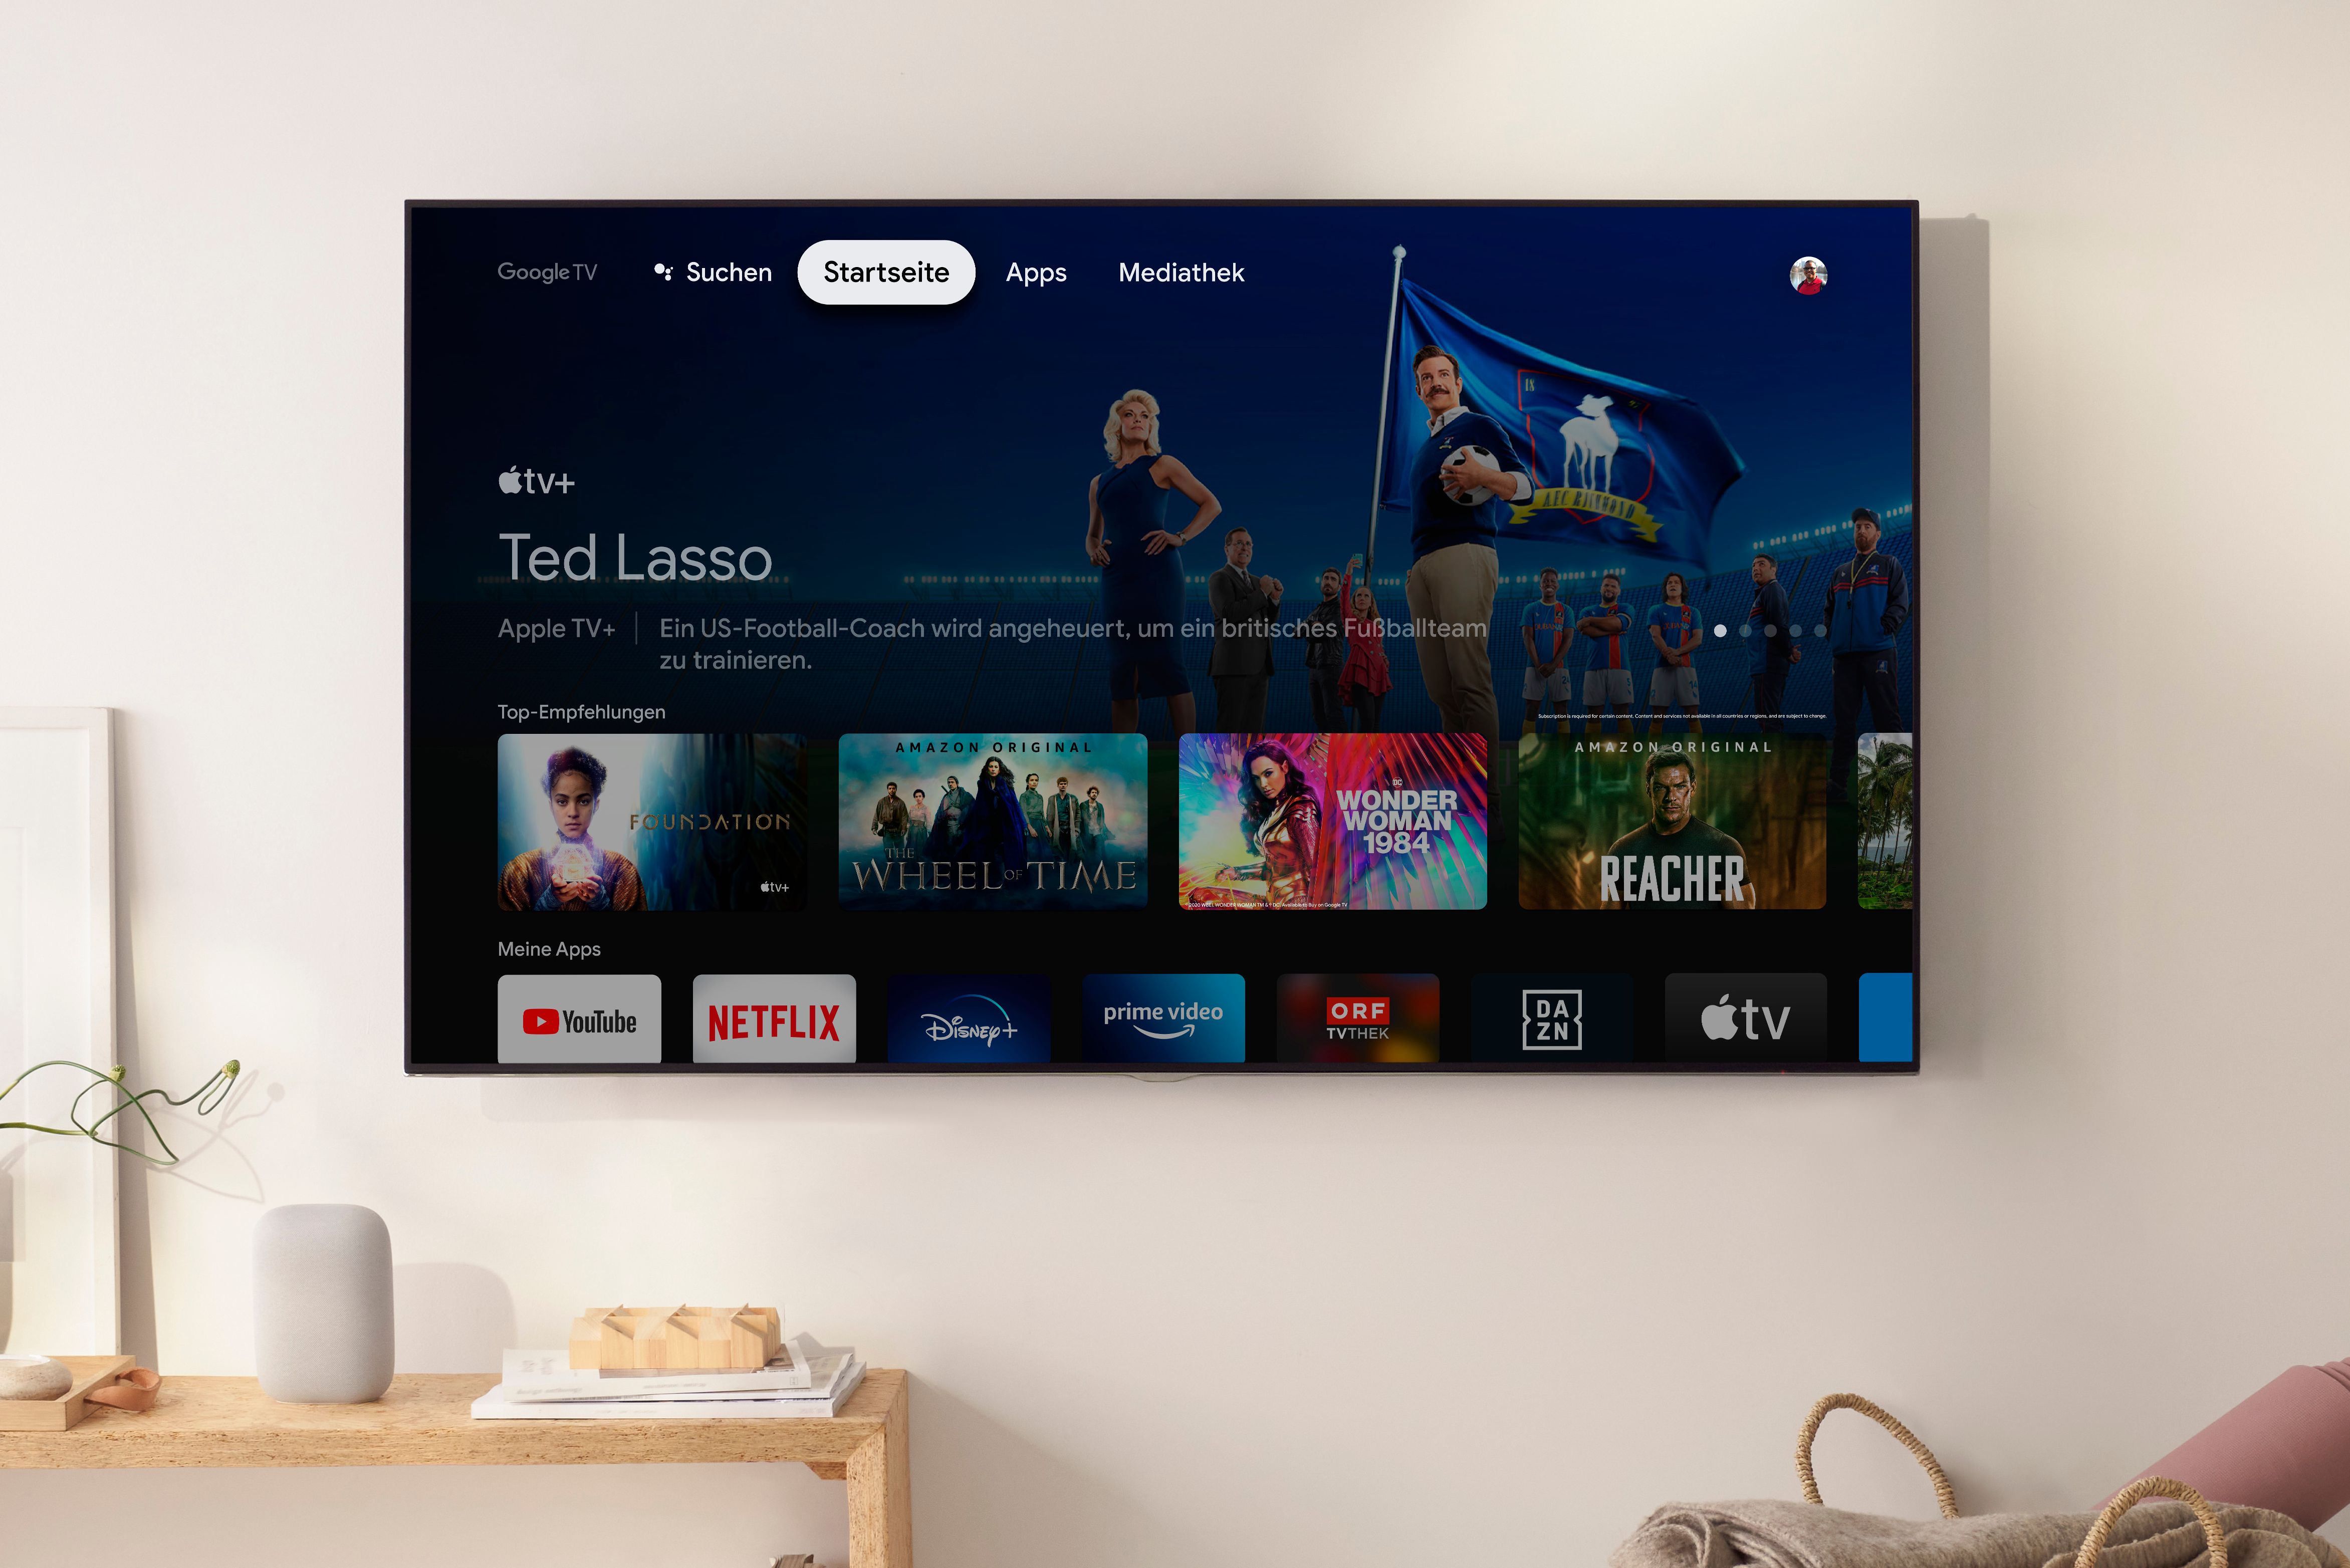 Chromecast mit TV (HD): Google stellt günstigeres Streaminggerät vor – auch Österreich - Hardware derStandard.at › Web